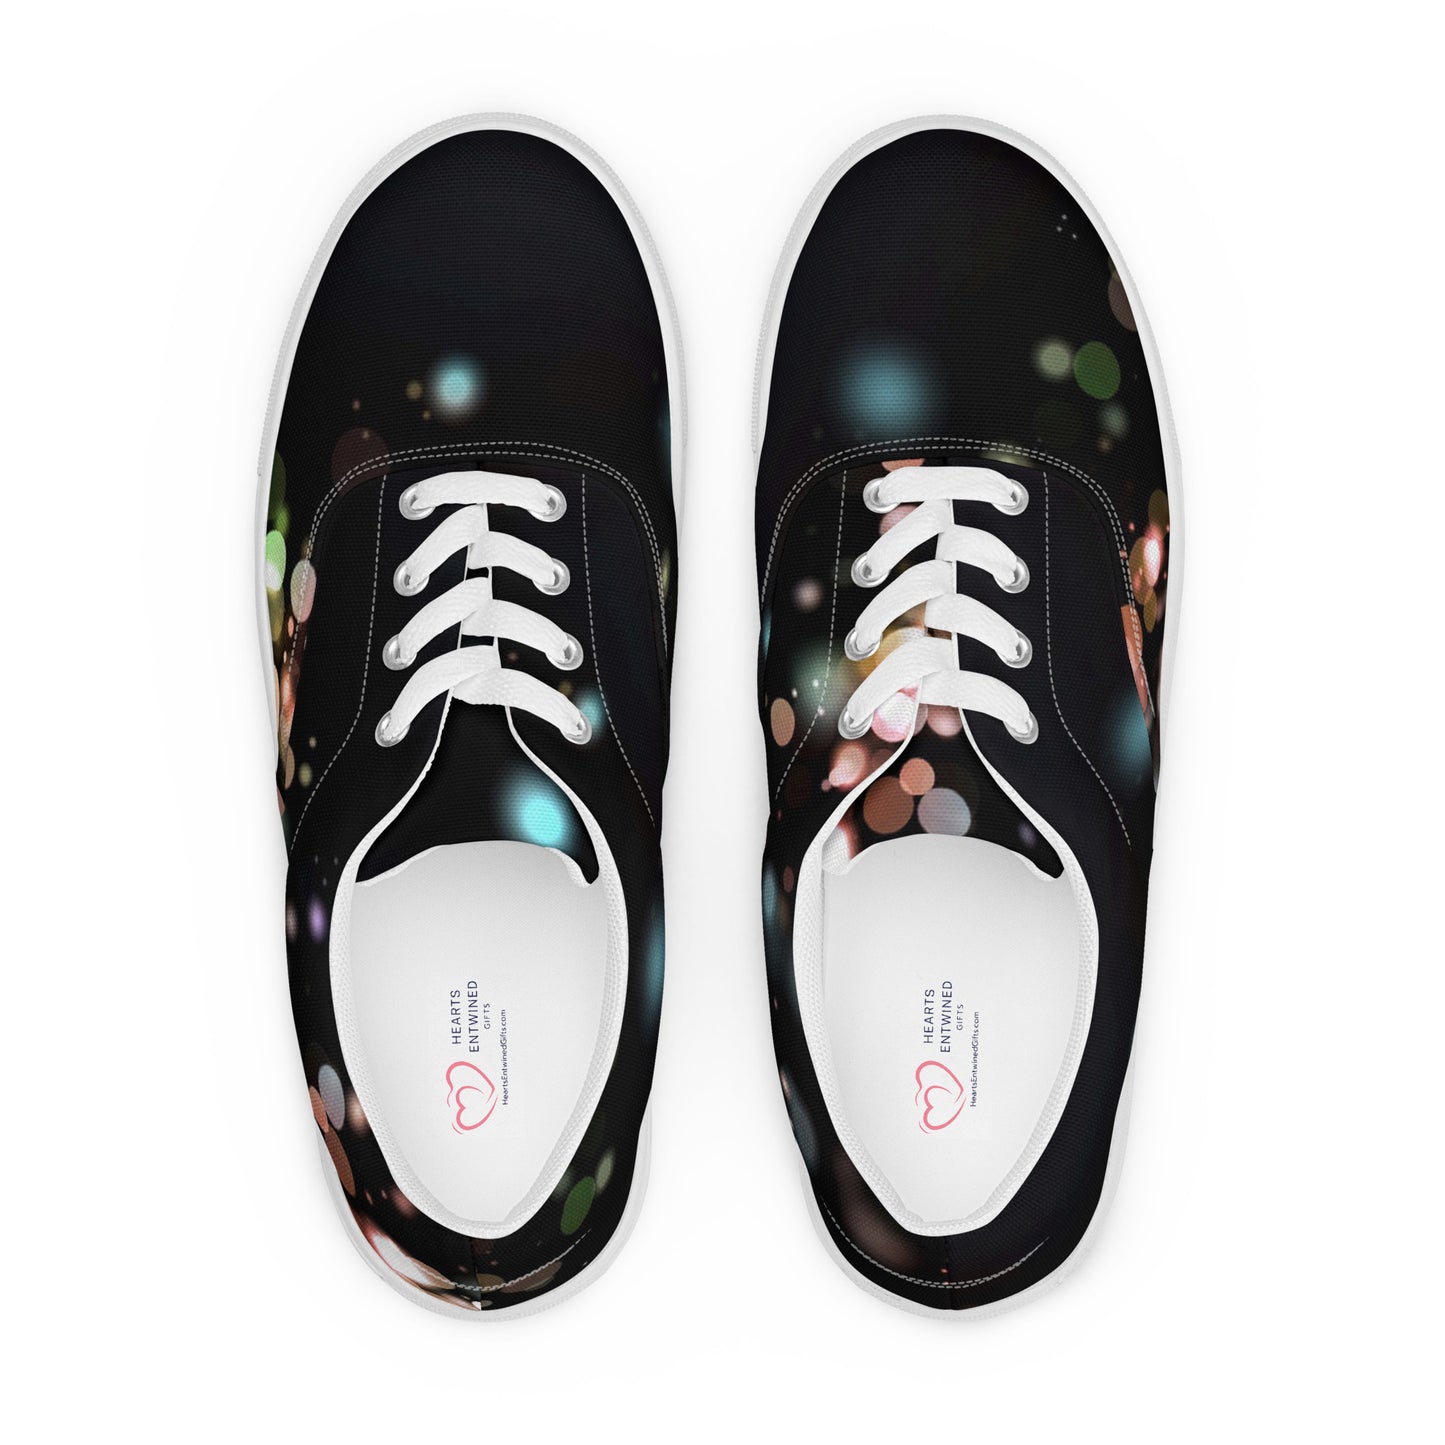 Black Glitter | Women’s Lace-Up Canvas Shoes